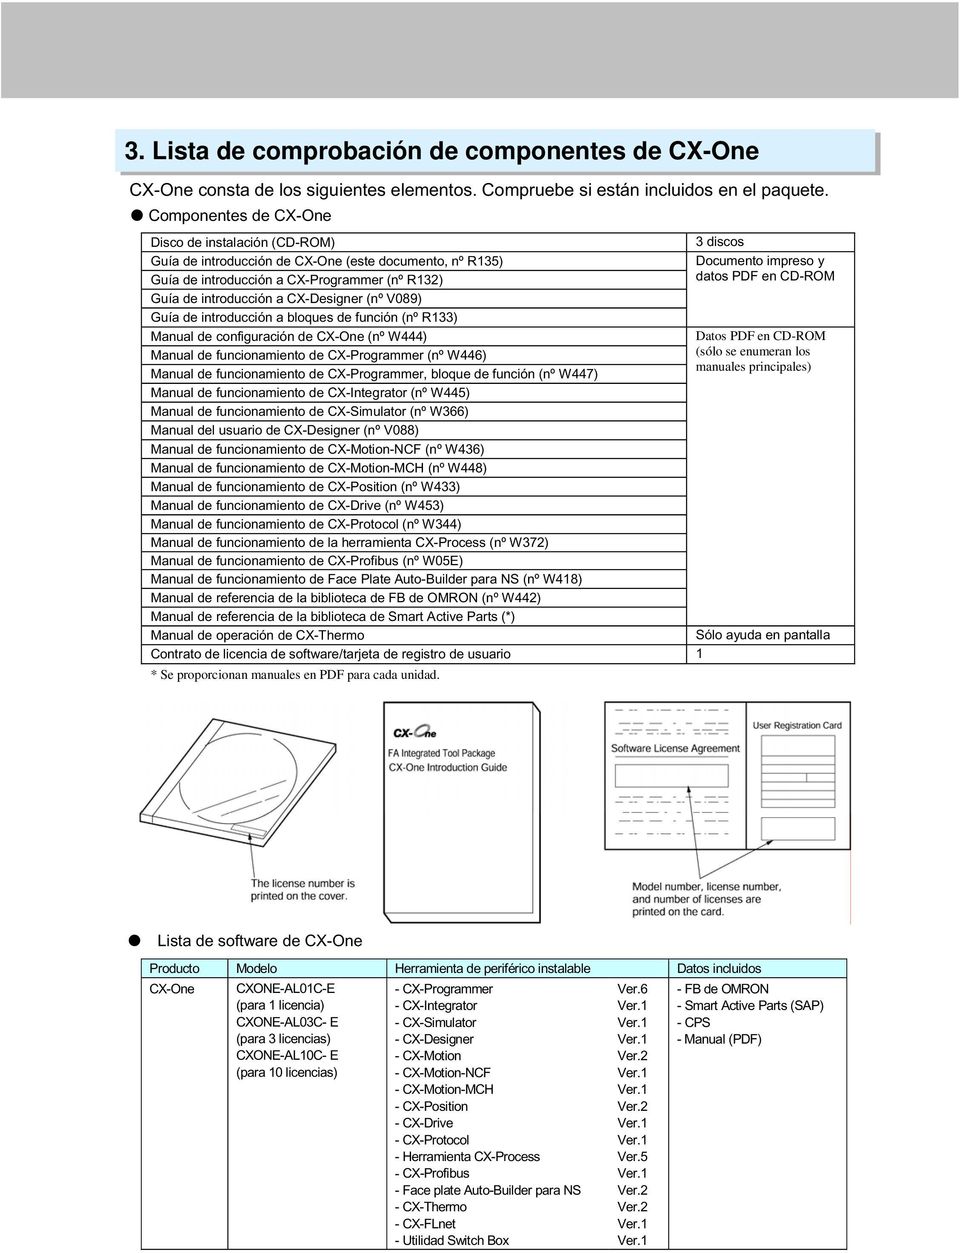 CD-ROM Guía de introducción a CX-Designer (nº V089) Guía de introducción a bloques de función (nº R133) Manual de configuración de CX-One (nº W444) Datos PDF en CD-ROM Manual de funcionamiento de